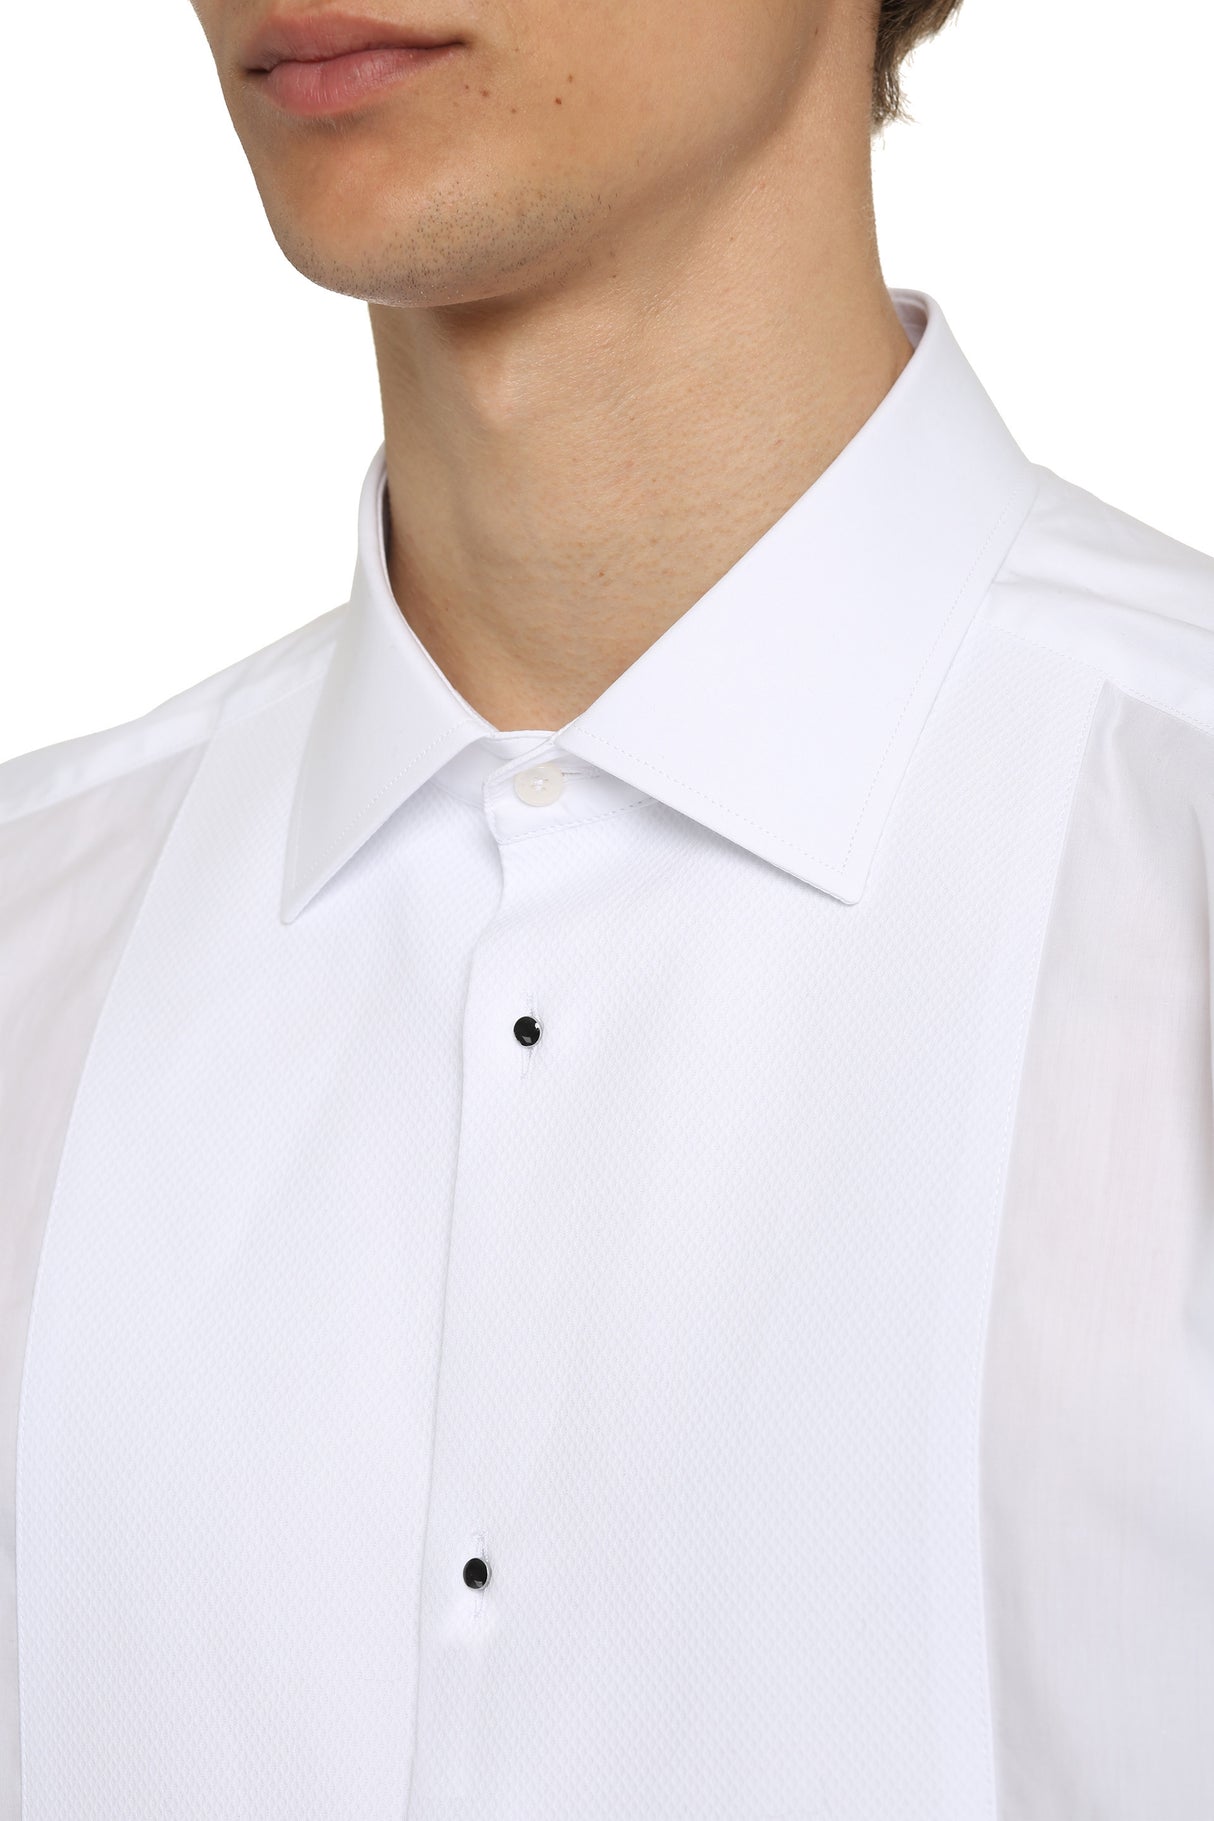 メンズ 白ポプリンタキシードシャツ（エンベル月ドボタン・ラウンドヘム付き）